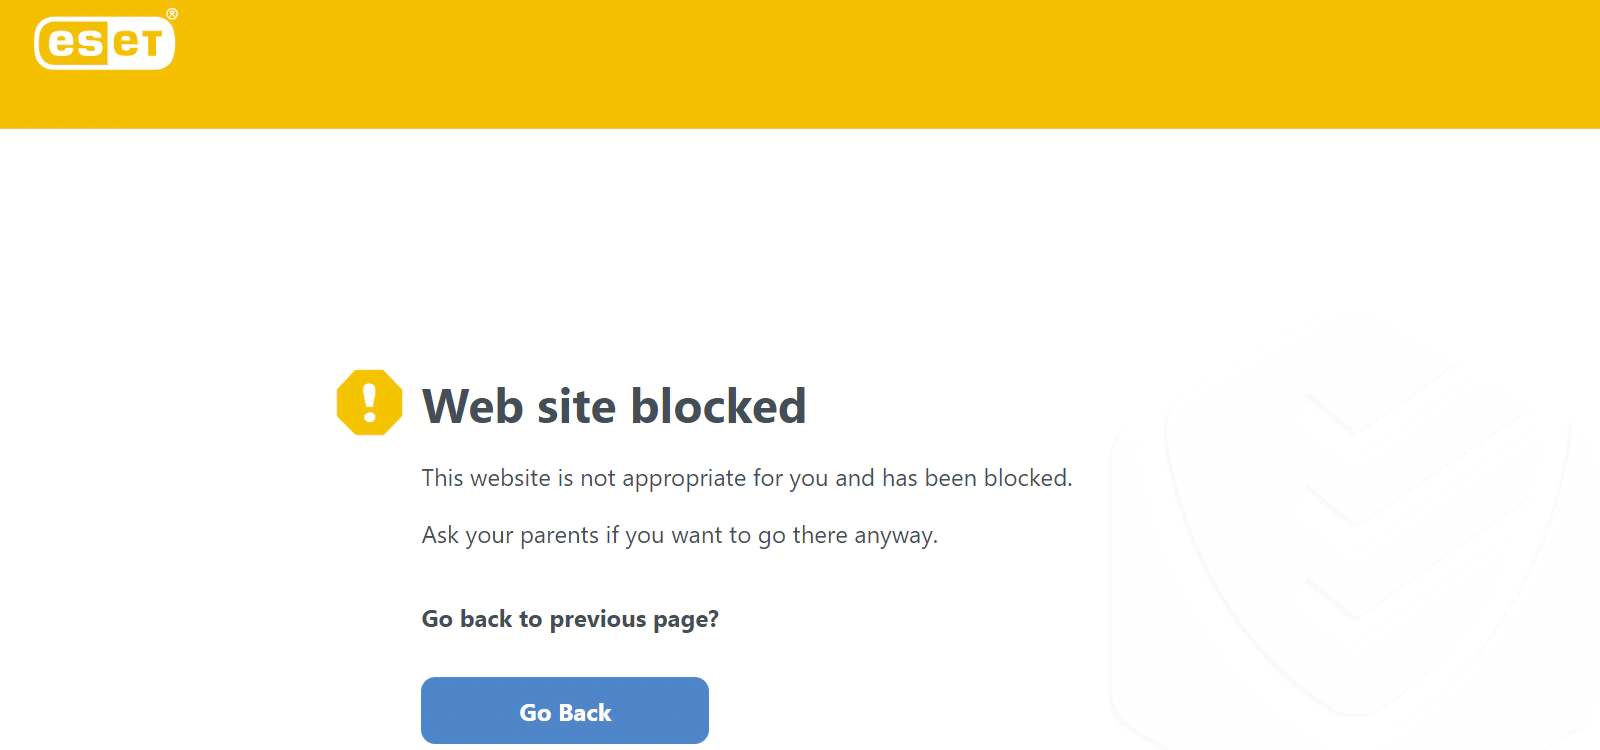 
Okno zablokowanej witryny internetowej Programu ESET